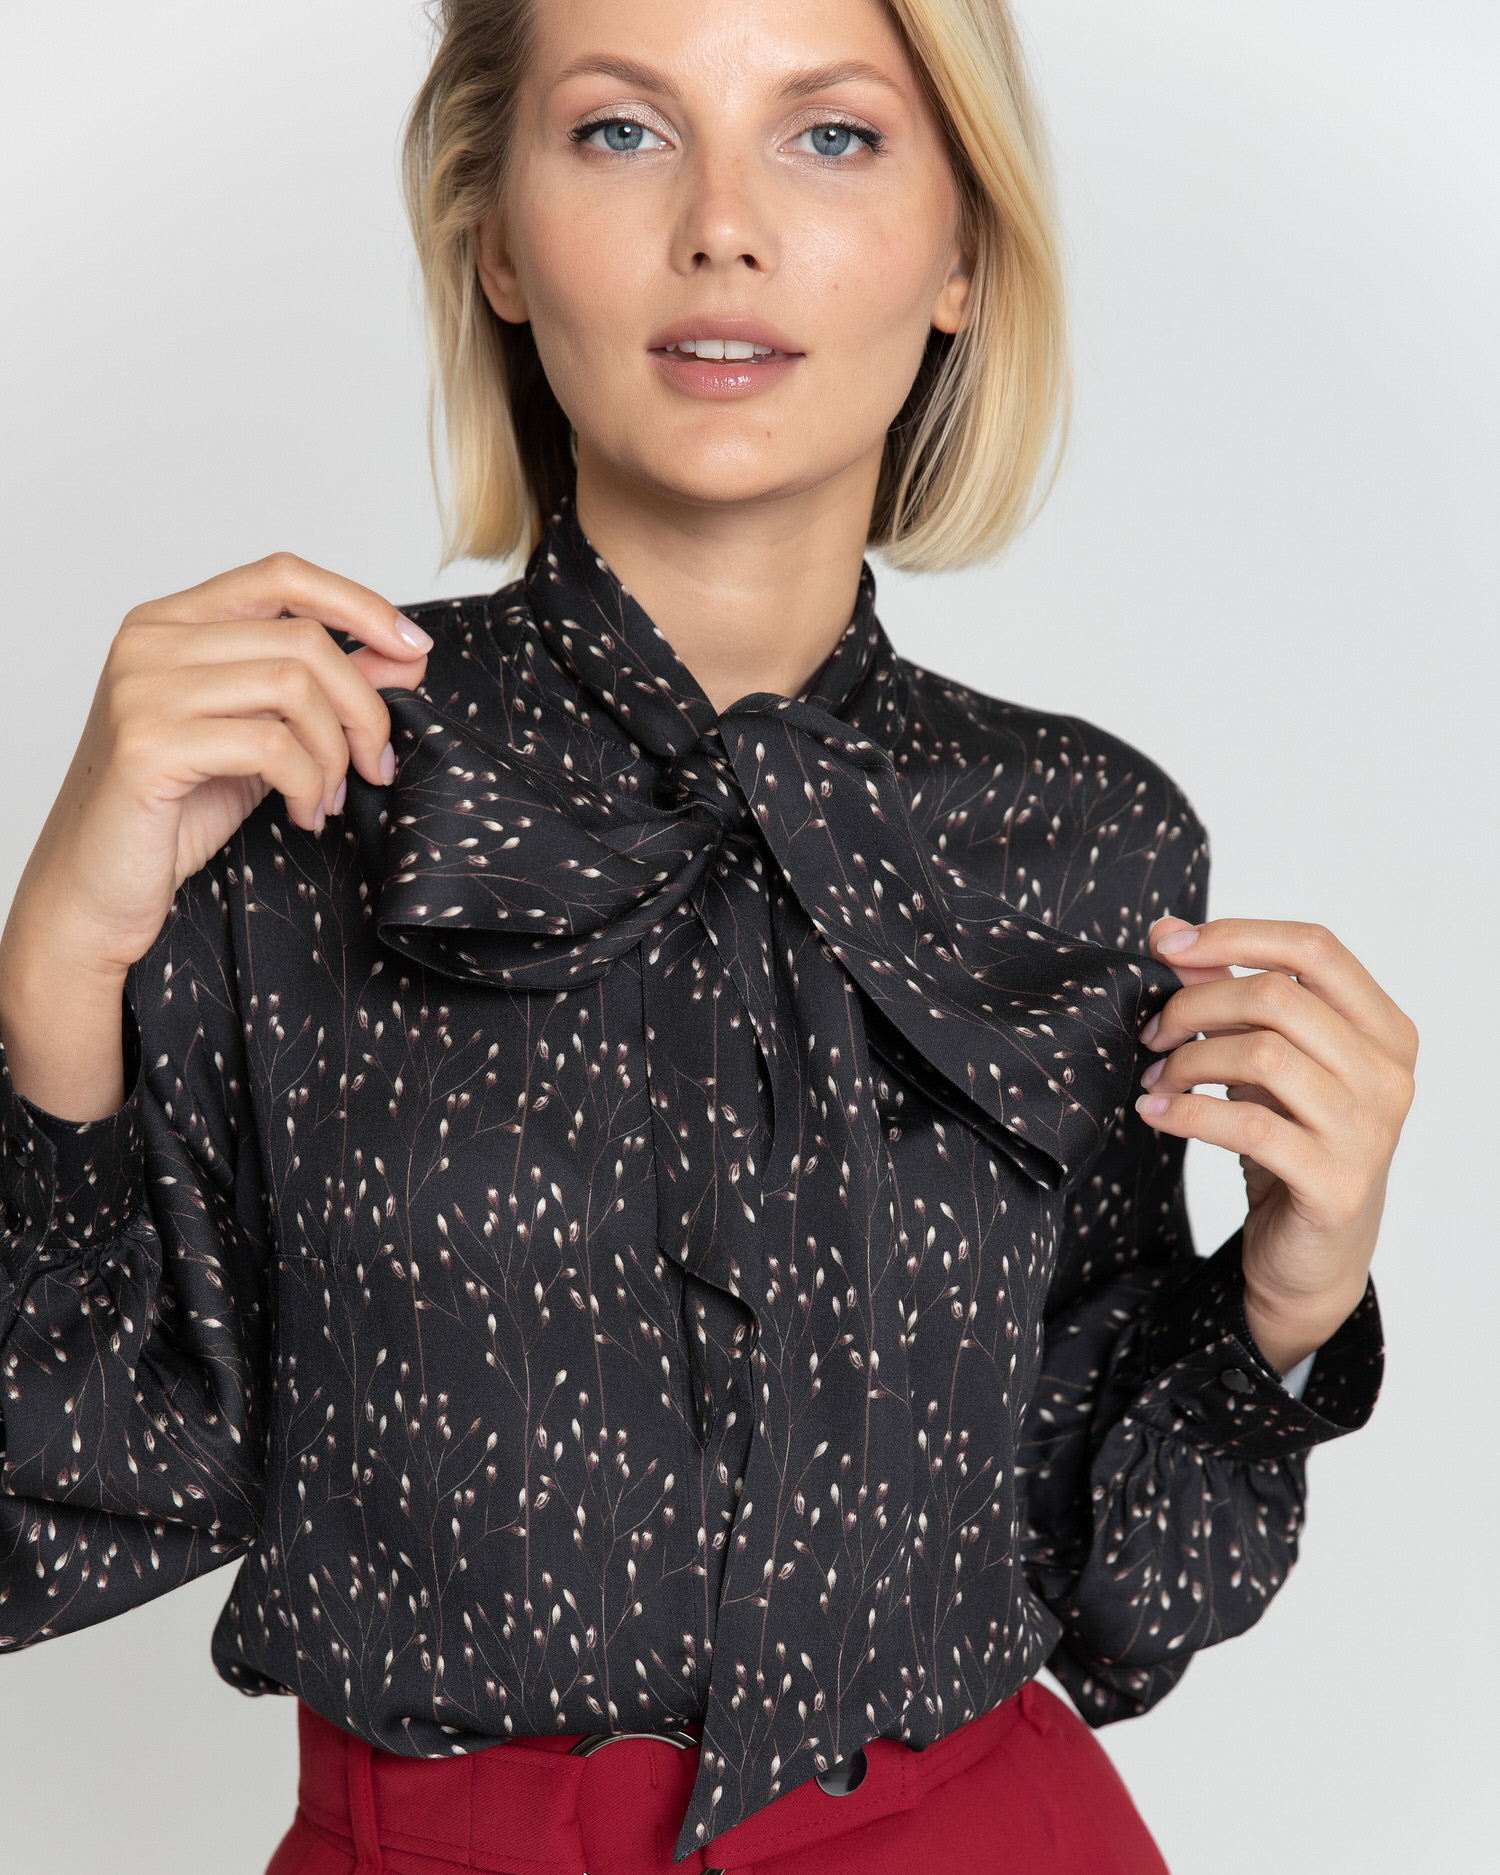 Женская блузка с бантом чёрная с принтом - 8379 от byME 